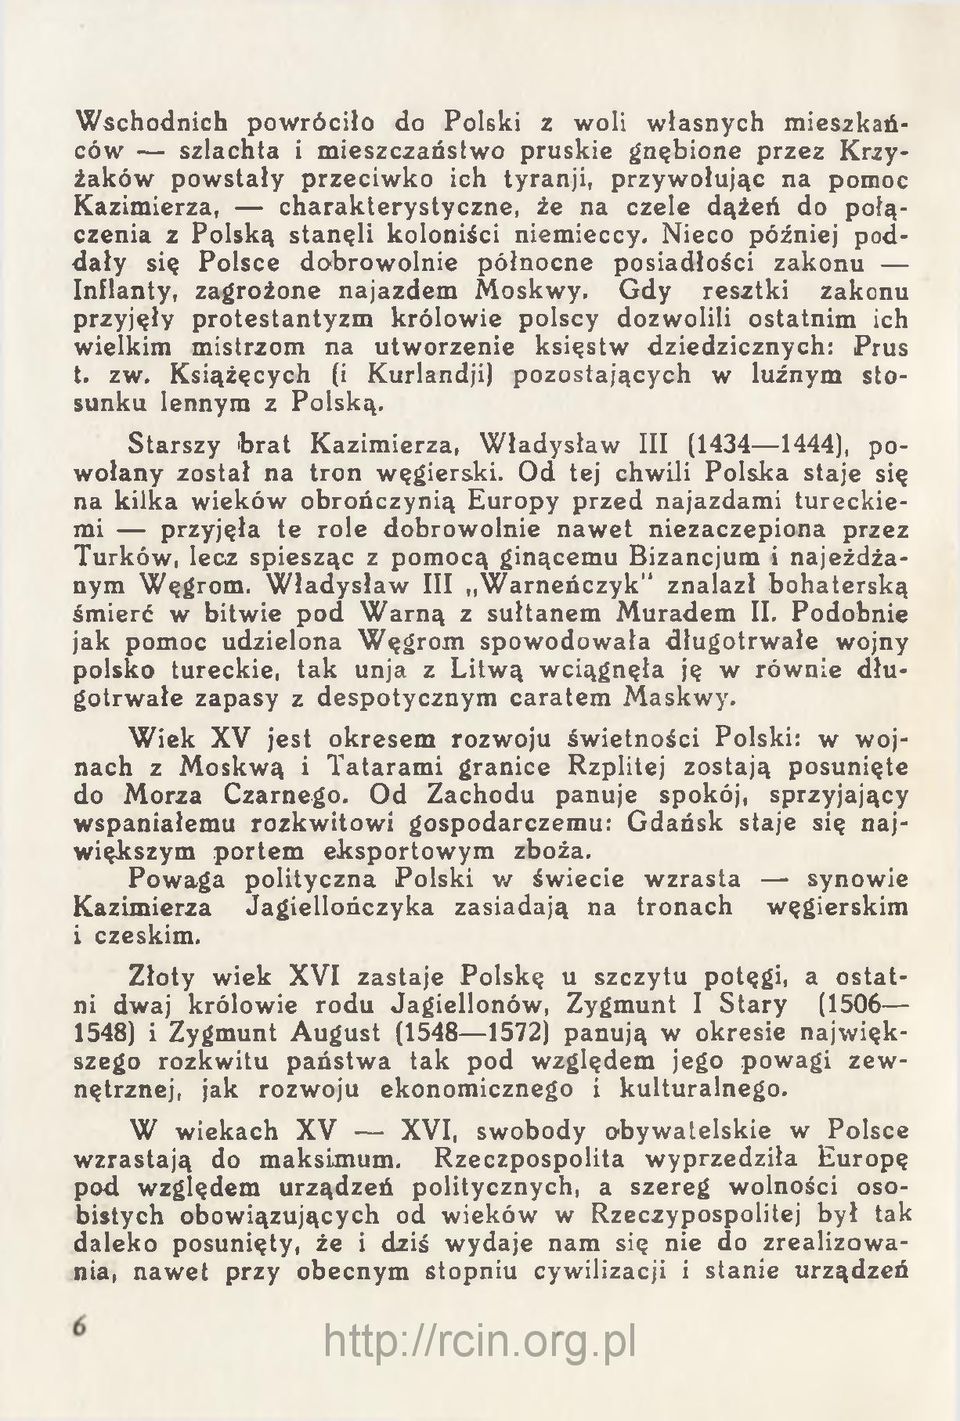 Gdy resztki zakonu przyjęły protestantyzm królowie polscy dozwolili ostatnim ich wielkim mistrzom na utworzenie księstw dziedzicznych: Prus t. zw.